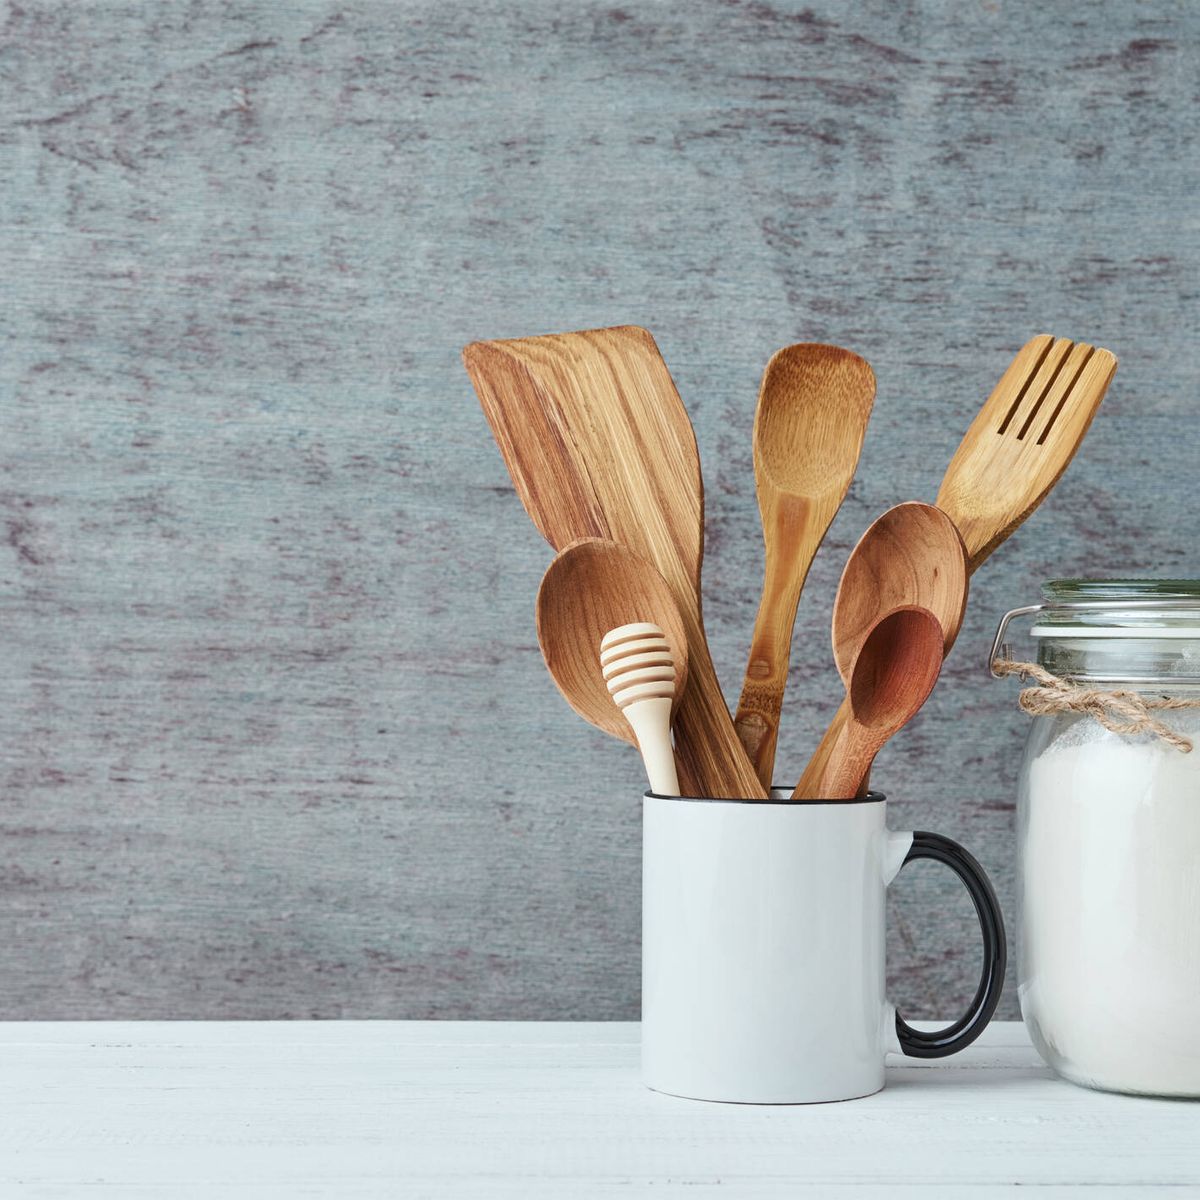 Por qué los expertos desaconsejan usar utensilios de madera para cocinar